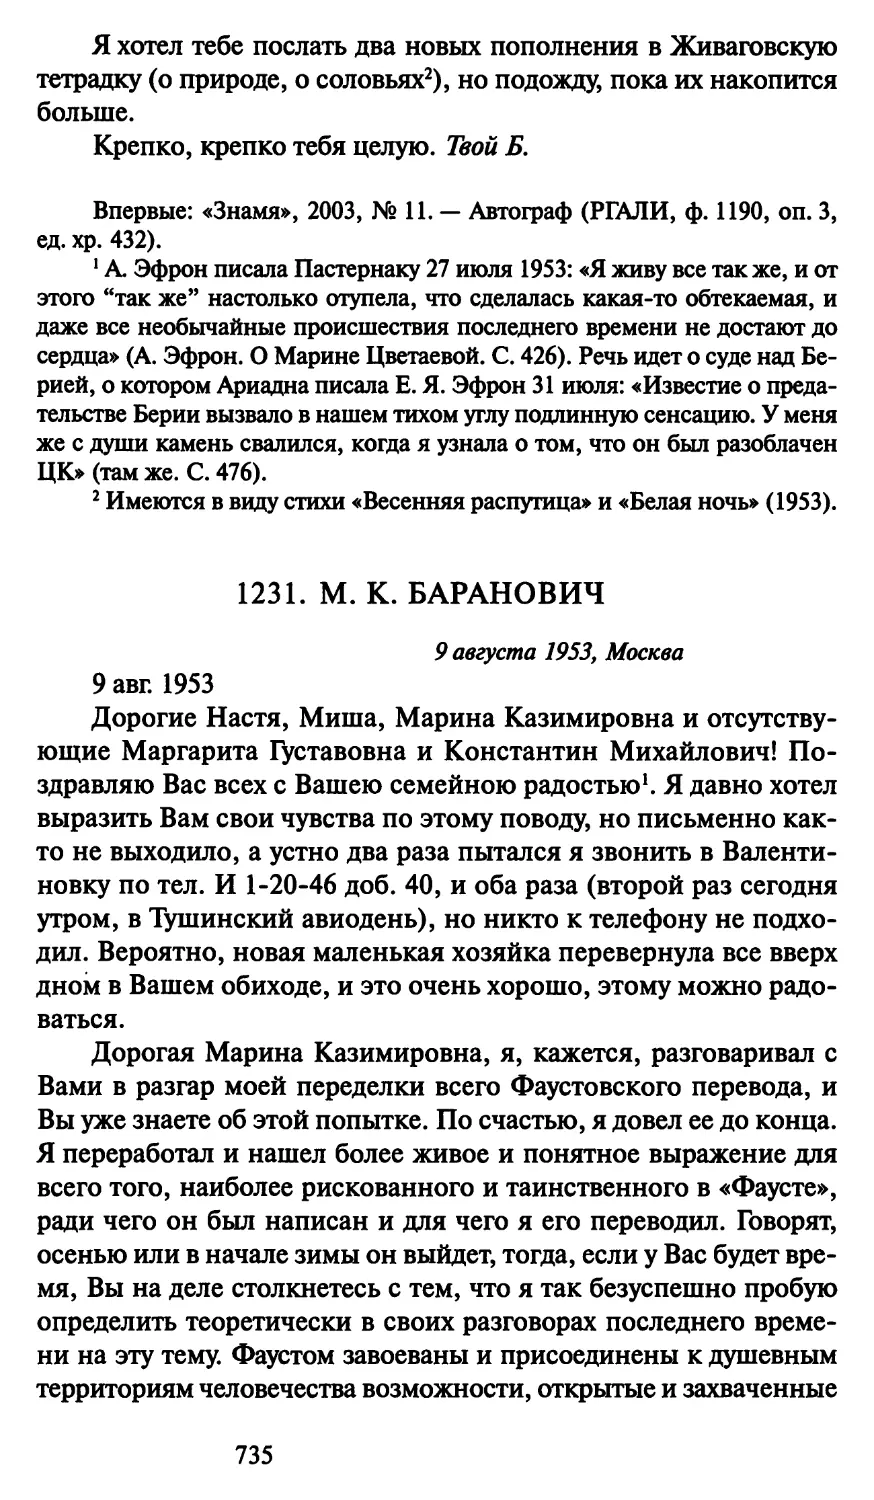 1231. М. К. Баранович 9 августа 1953